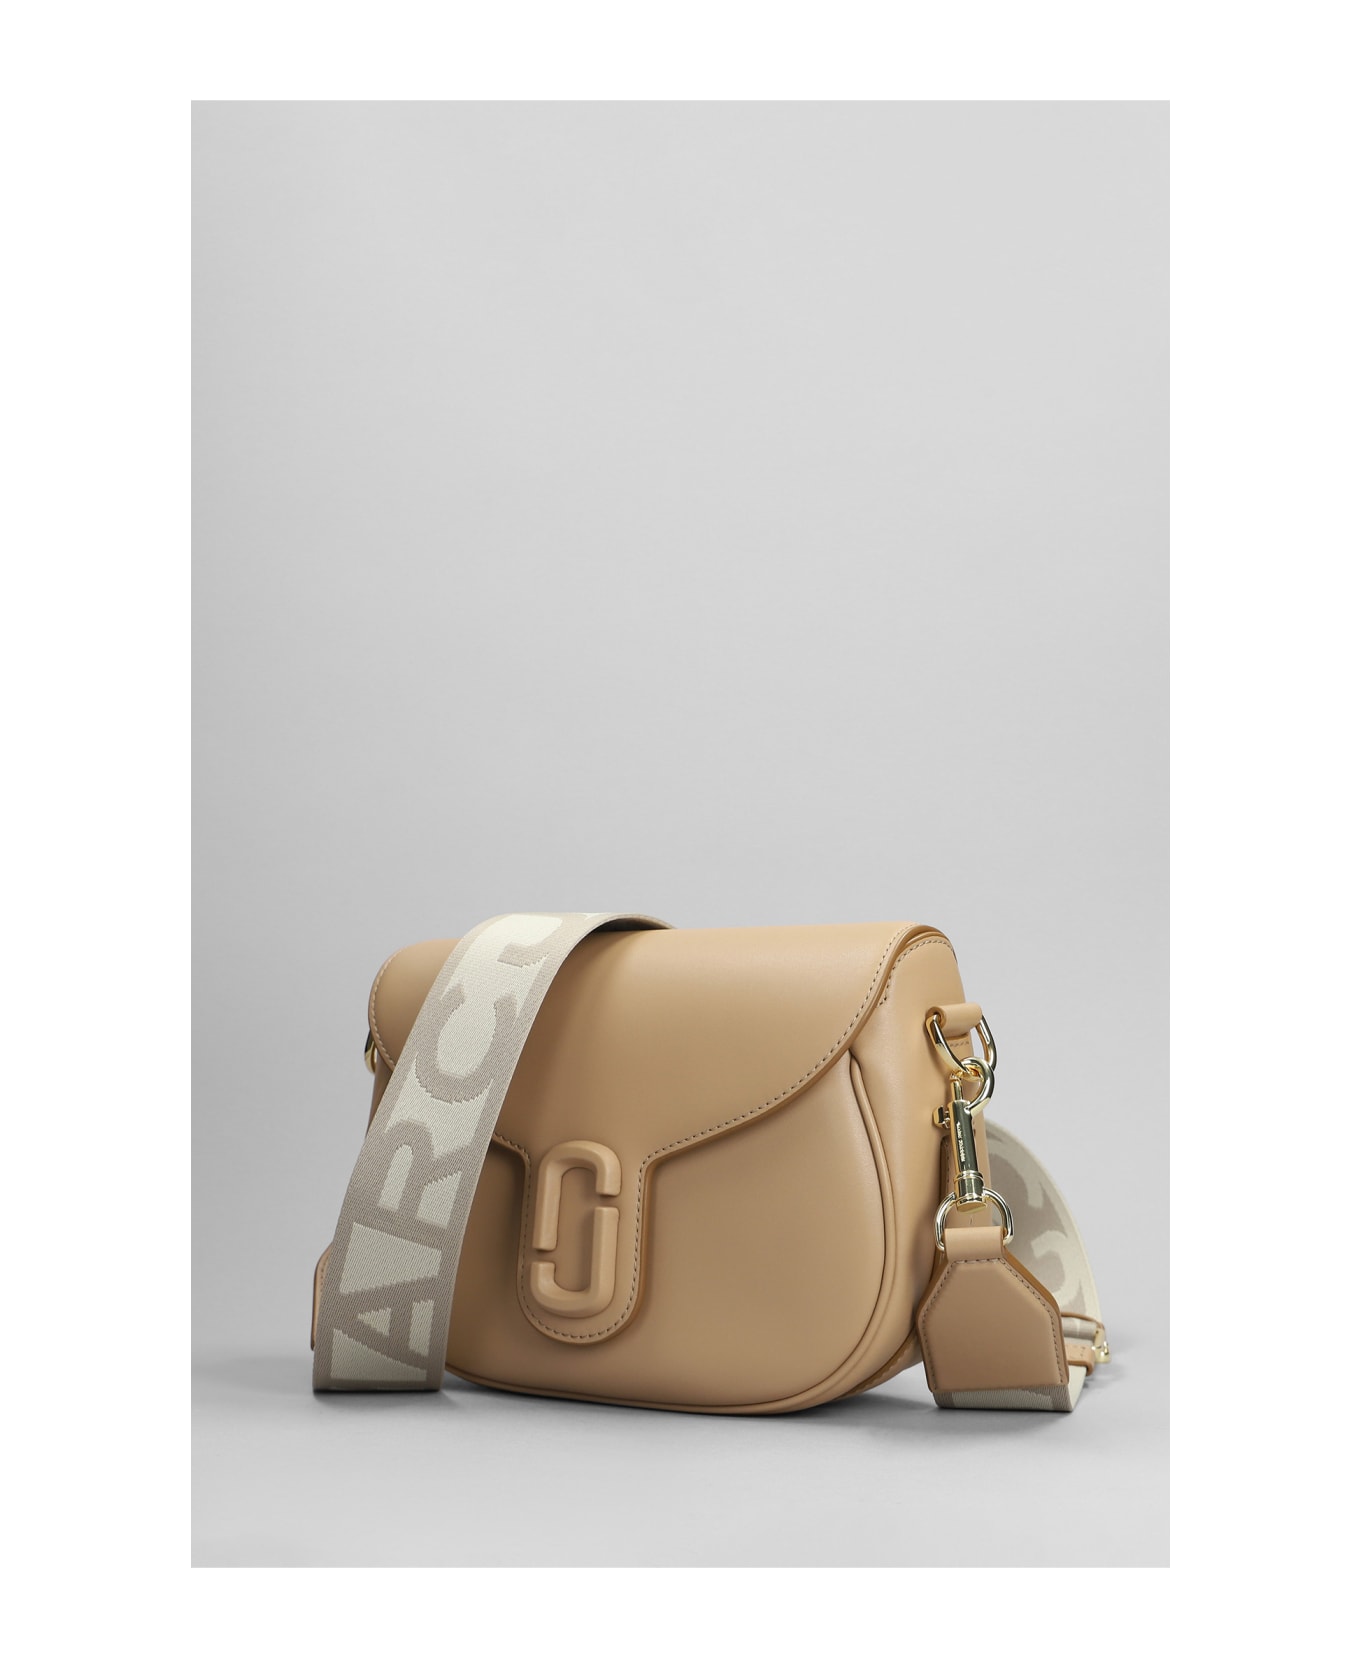 Marc Jacobs Shoulder Bag In Camel Leather - Camel